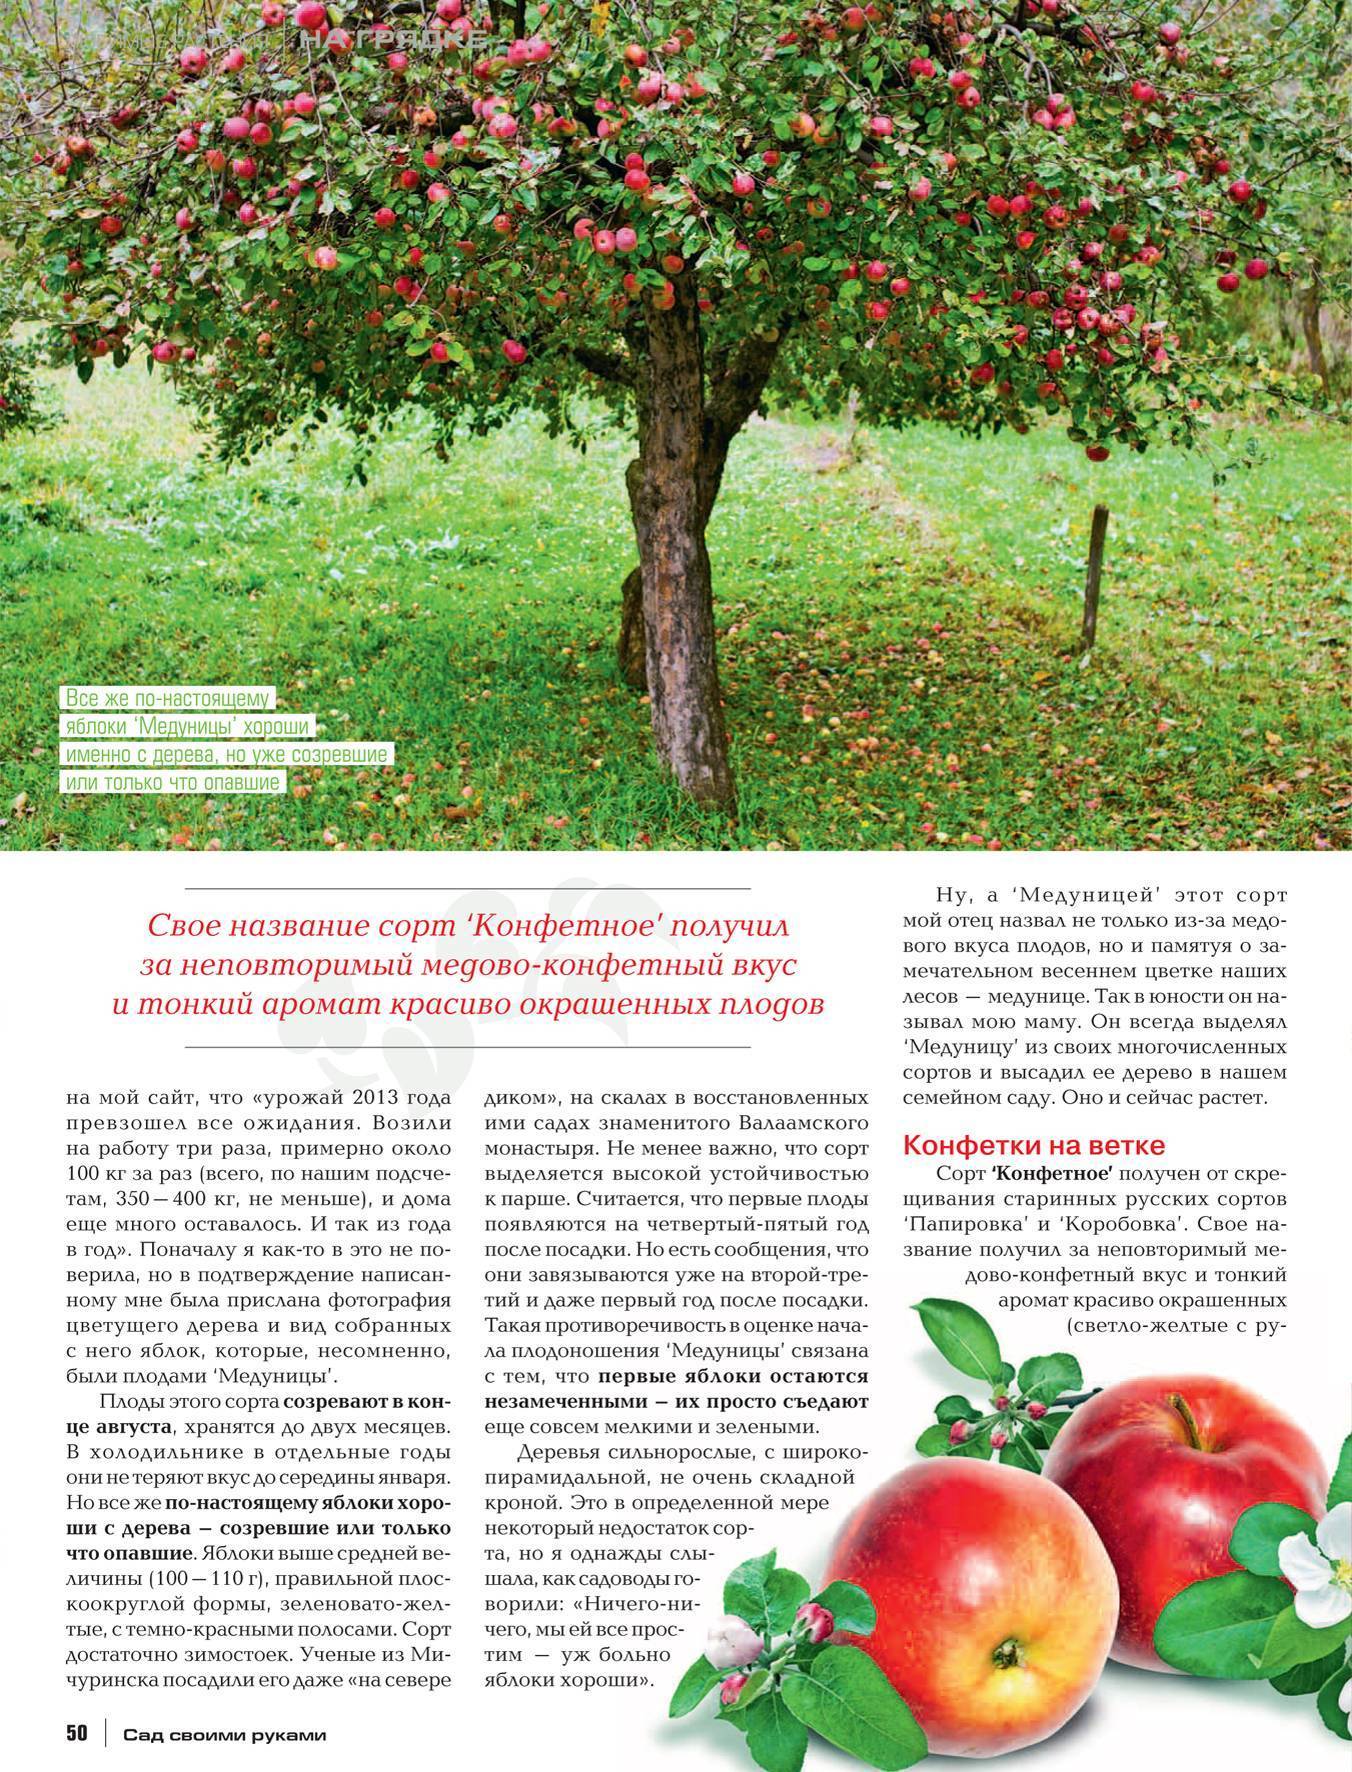 Яблоня спартак: описание и характеристики сорта, посадка и выращивание с фото